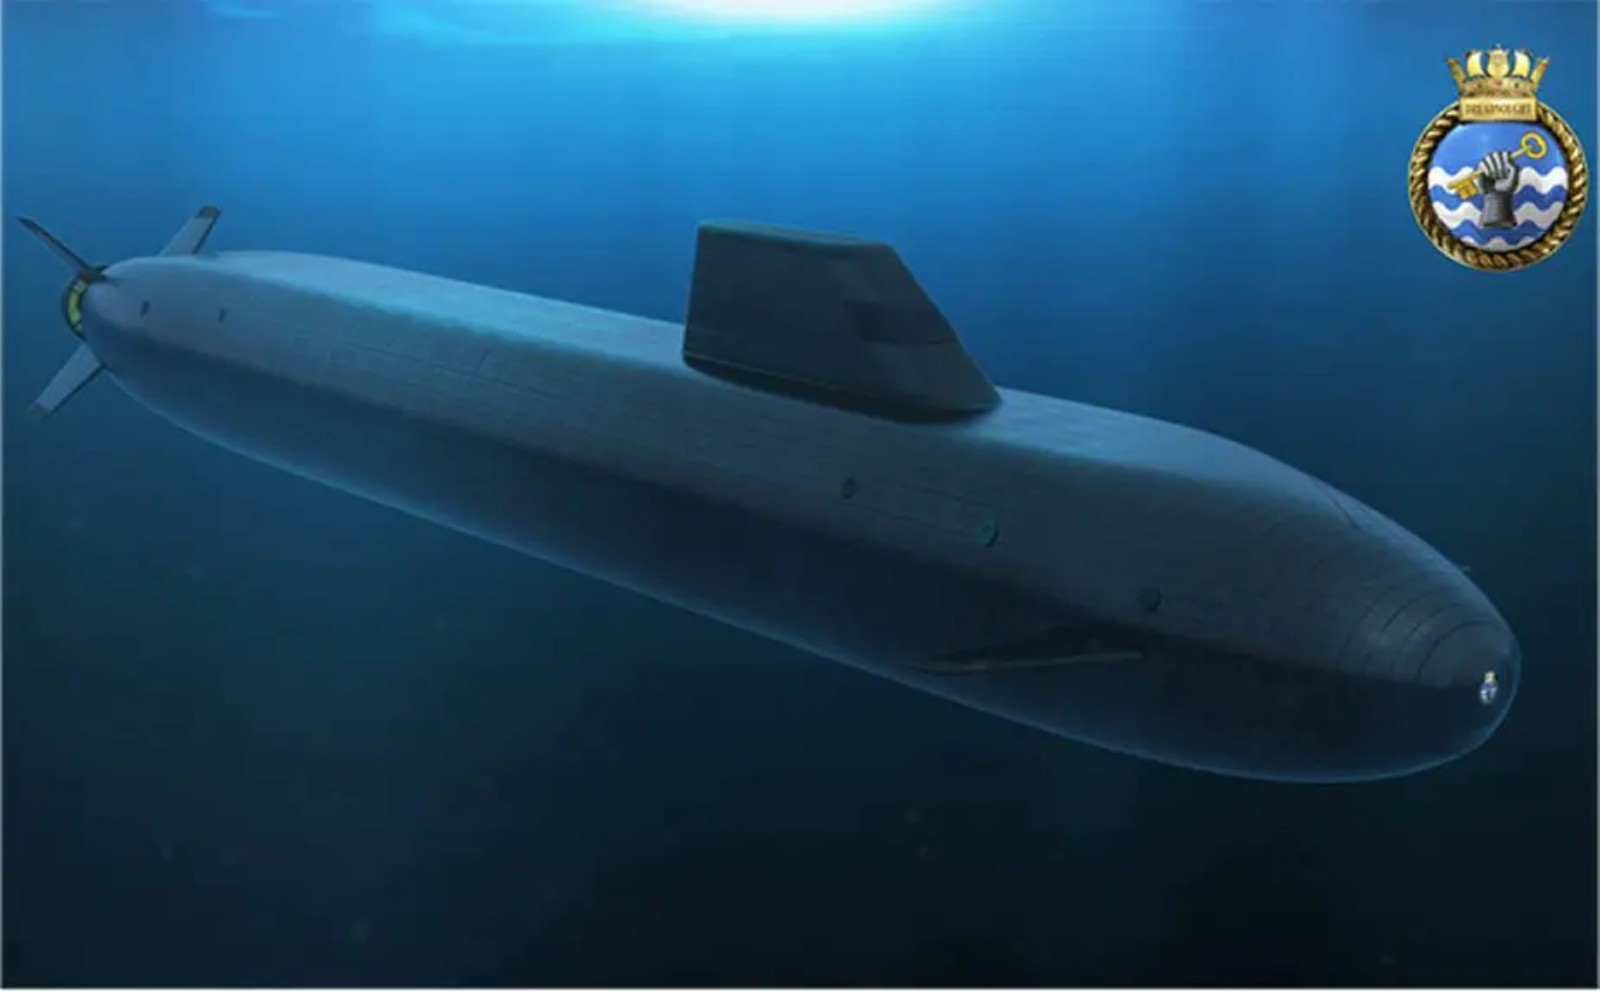 Wojna podwodna opanowana do perfekcji. Jak wiele zmieni Atlantis 2040 w działaniu Wielkiej Brytanii?